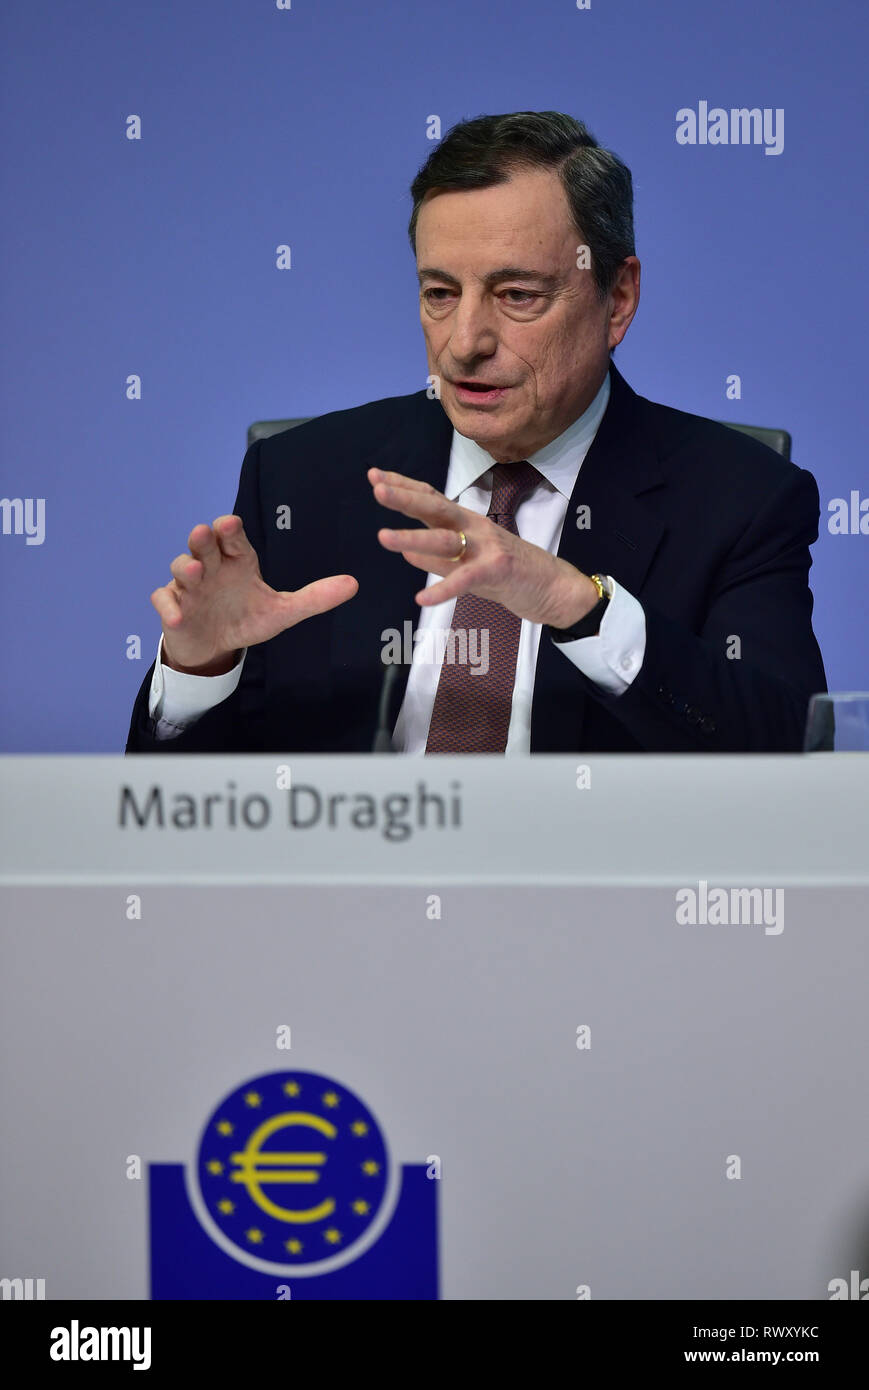 Francfort, Allemagne. 7 mars, 2019. Banque centrale européenne (BCE) Mario Draghi Président assiste à une conférence de presse au siège de la BCE à Francfort, Allemagne, le 7 mars 2019. Crédit : Yang Lu/Xinhua/Alamy Live News Banque D'Images